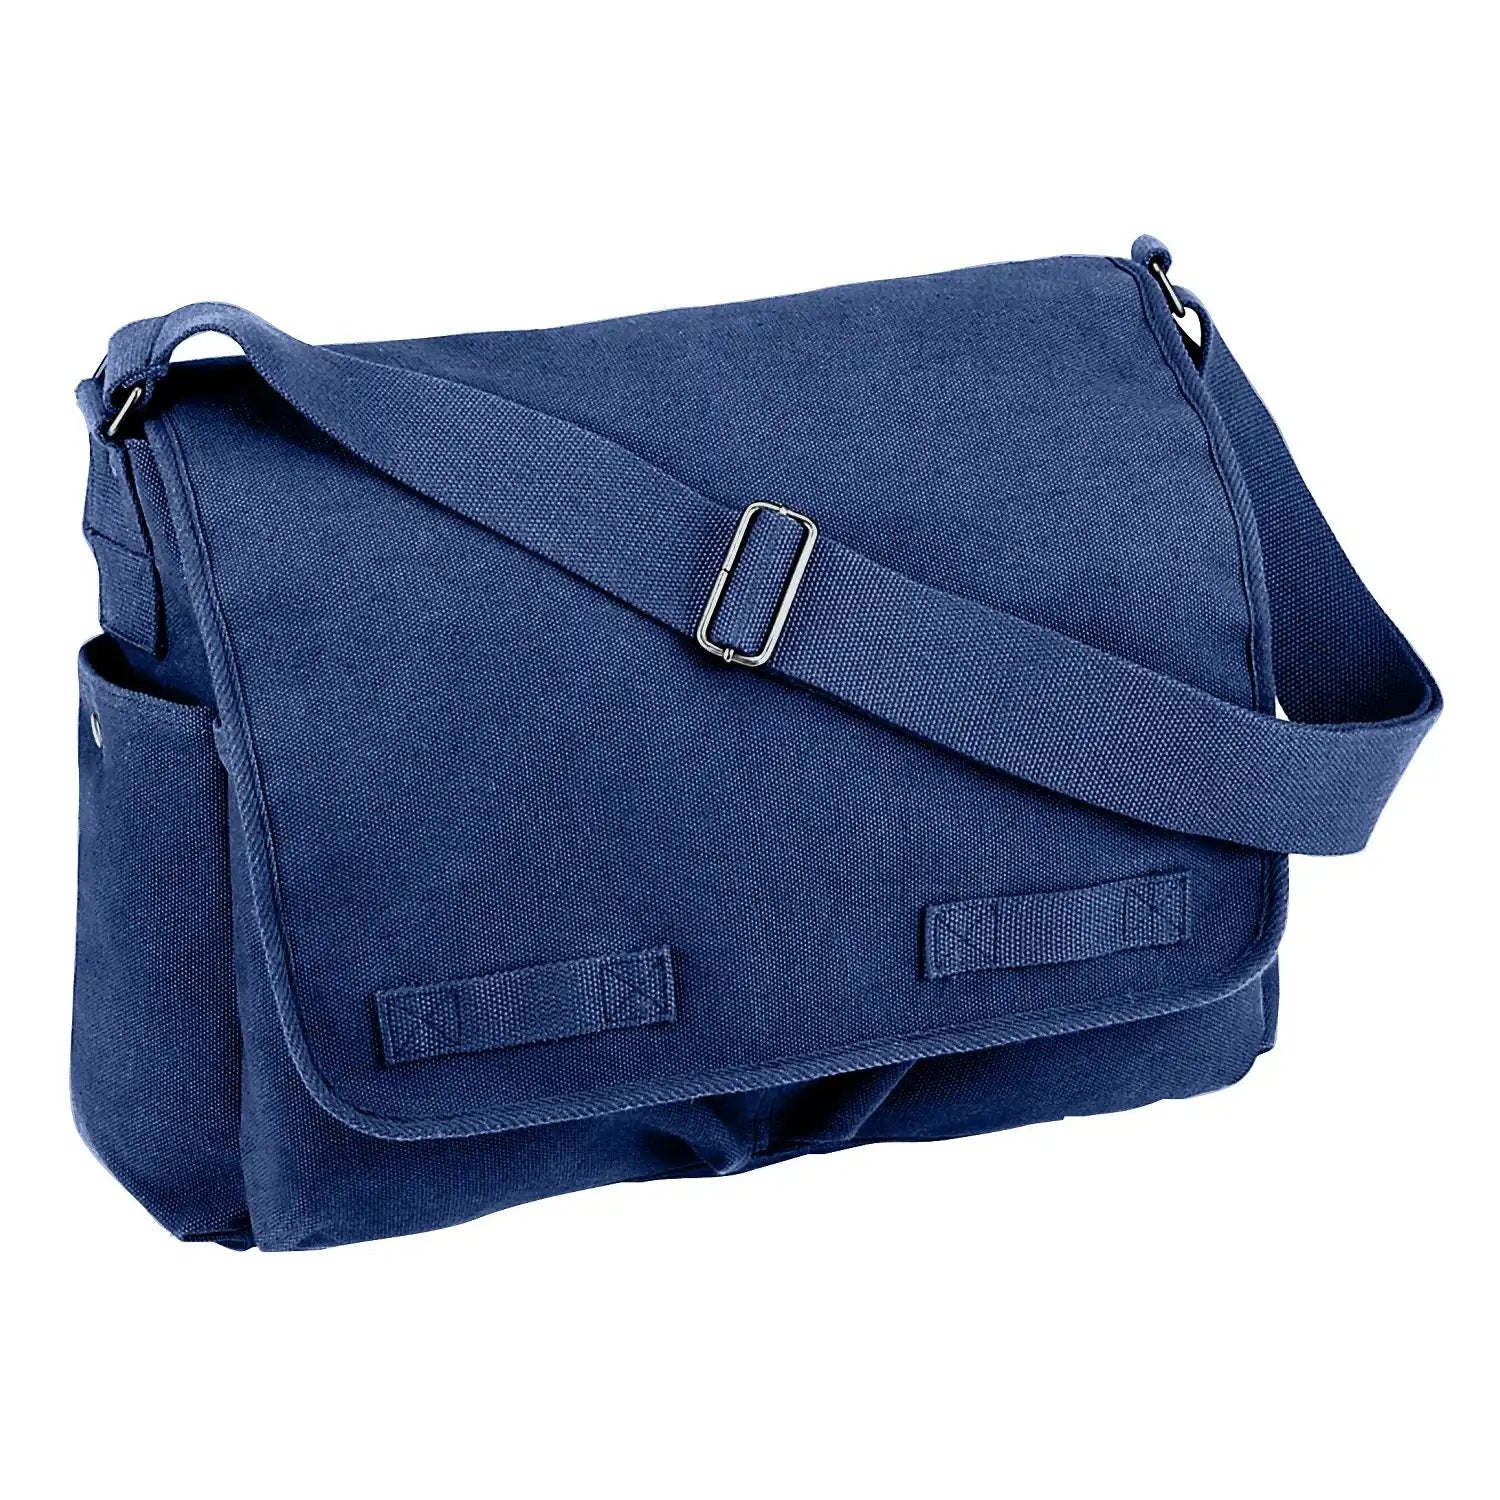 Vintage Washed Canvas Messenger Bag, Adjustable Shoulder Strap, Navy B –  Army Navy Marine Store